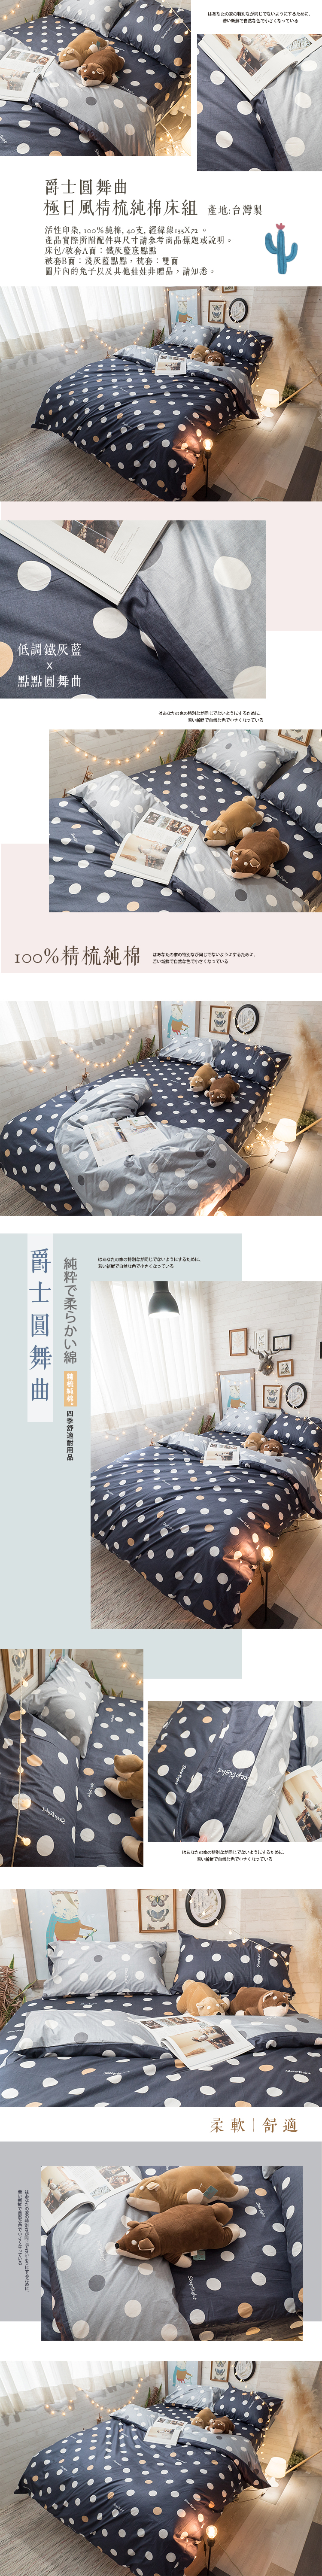 爵士圓舞曲 S3 單人床包與雙人新式兩用被4件組 100%精梳棉台灣製